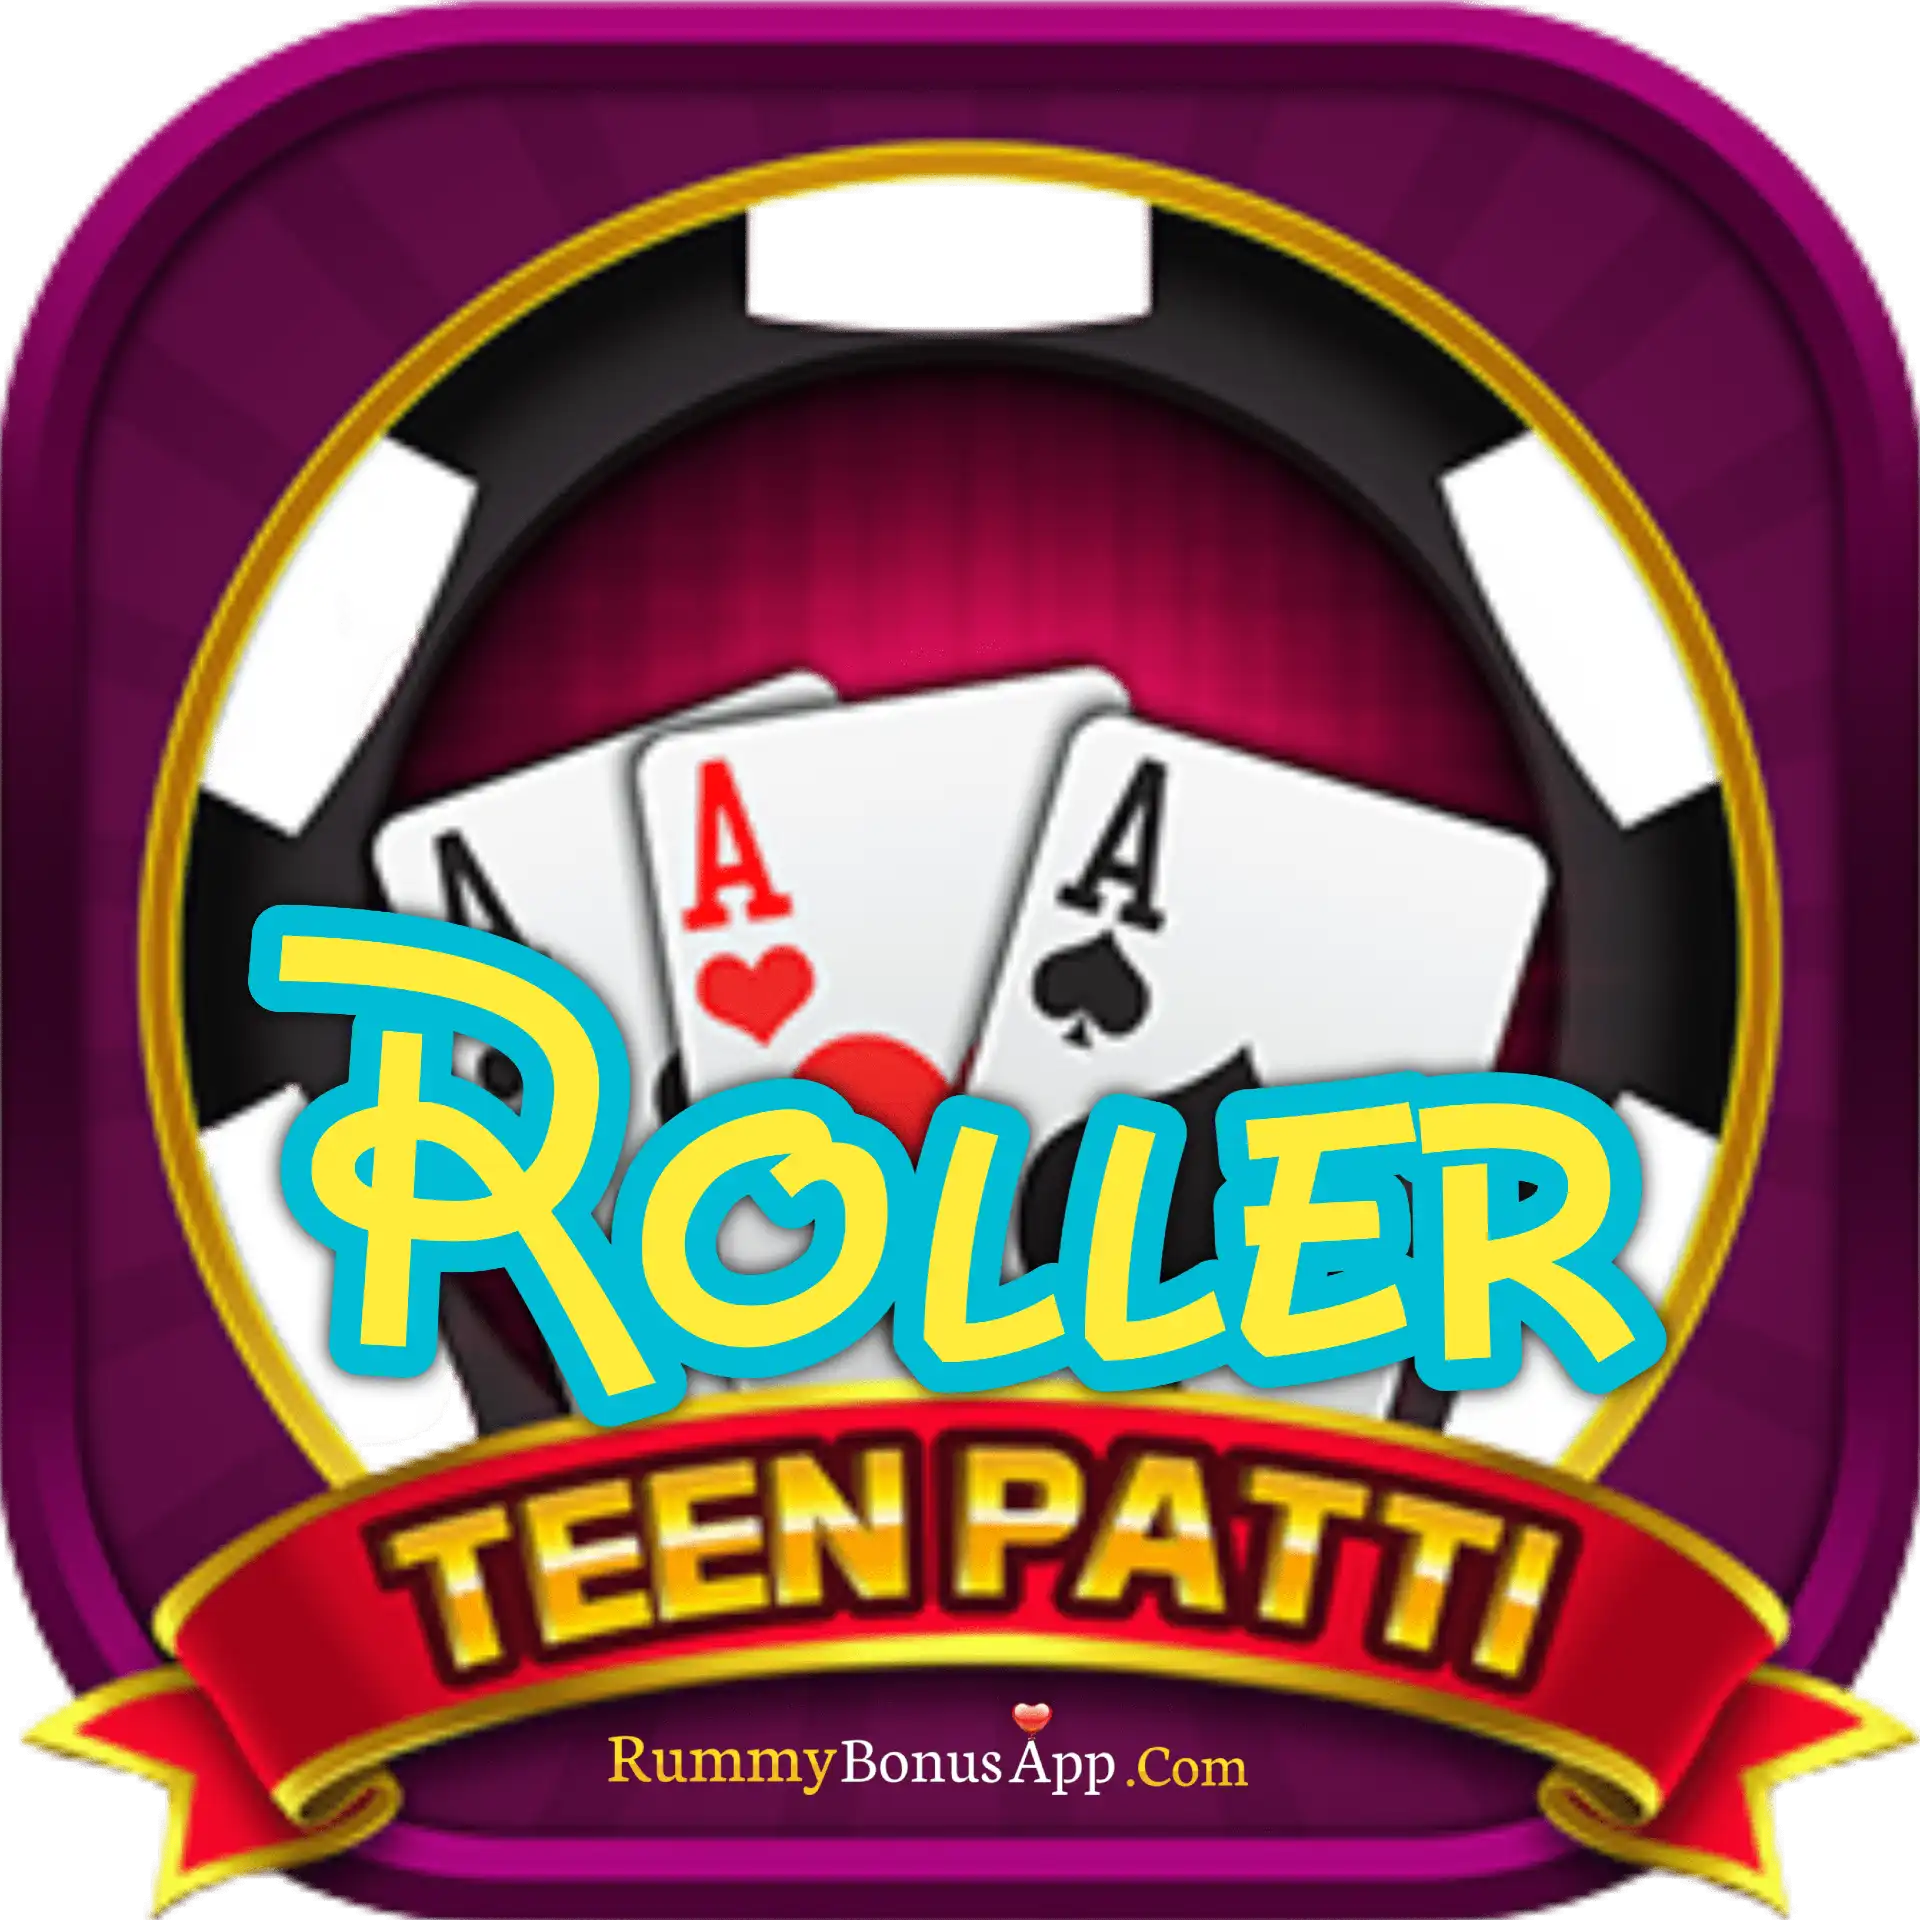 Teen Patti Roller - All Rummy App - All Rummy Apps - RummyBonusApp